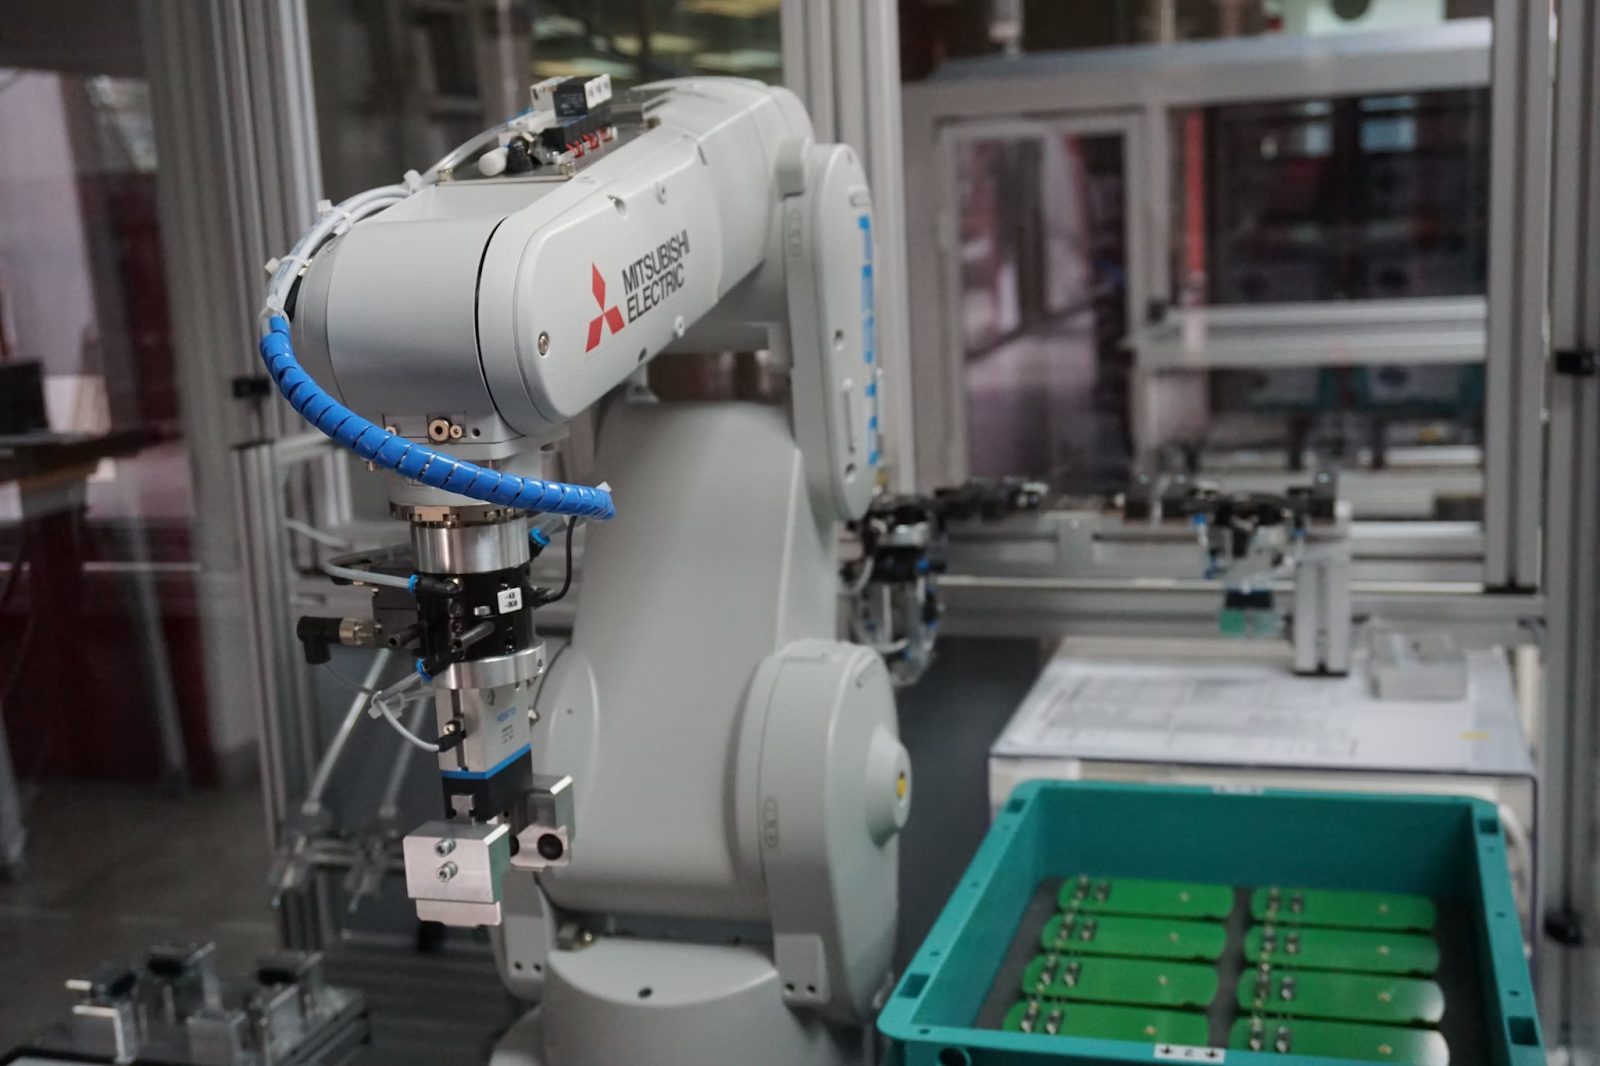 Los robots industriales pueden realizar múltiples tareas